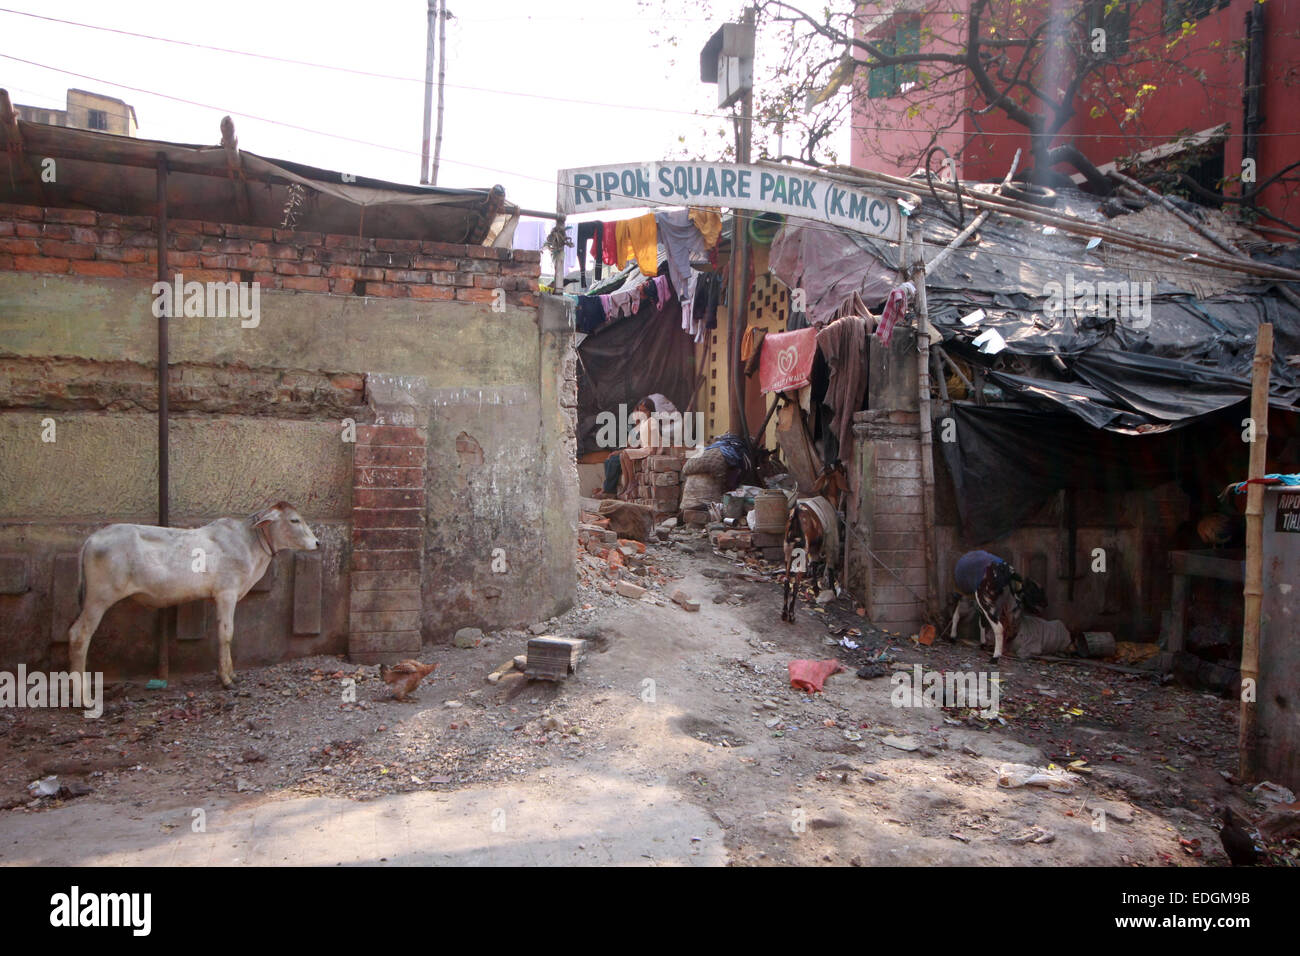 Shack houses near Central Metro, Kolkata (Calcutta), India Stock Photo